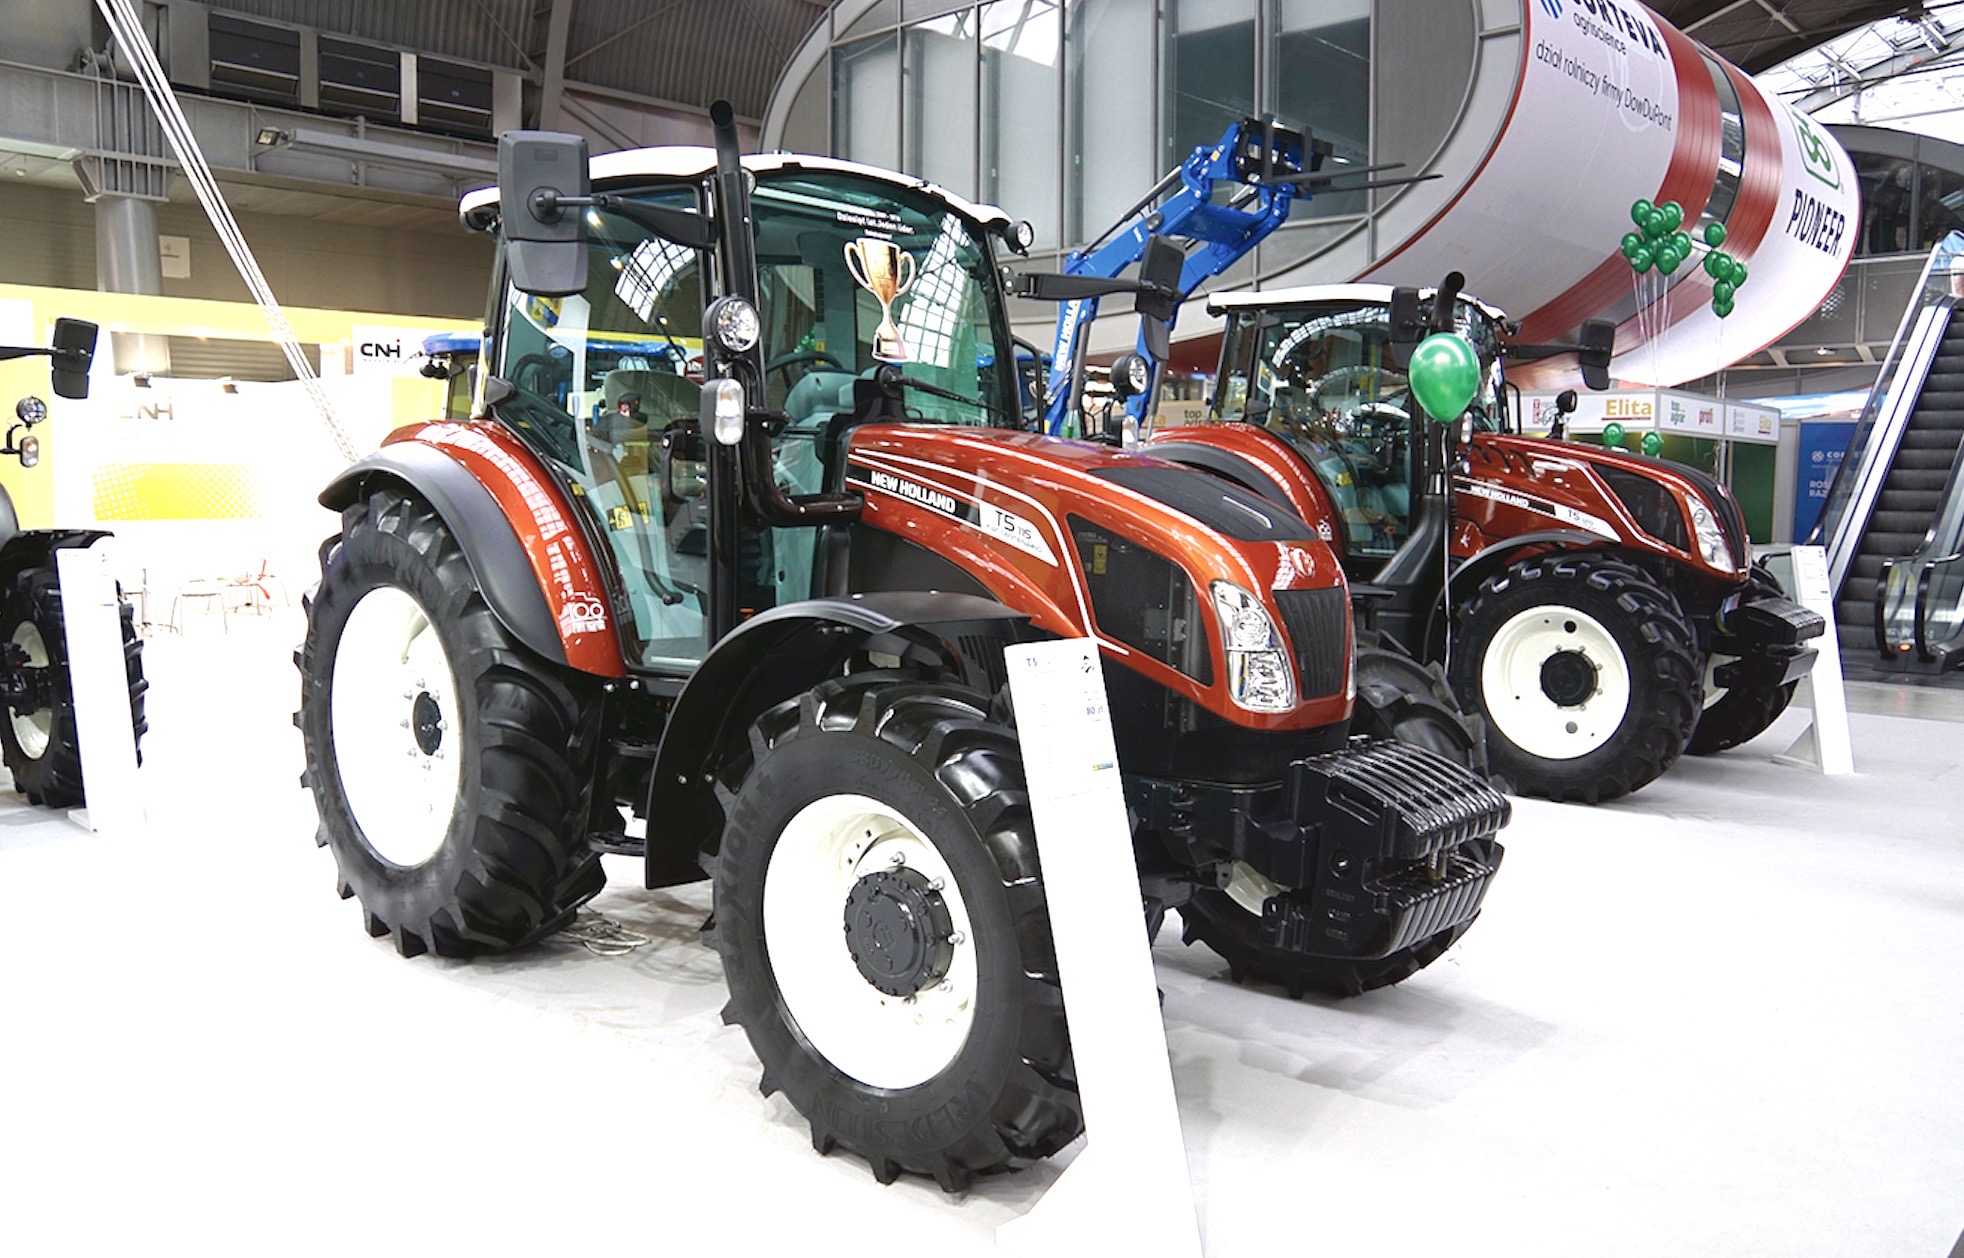  32 119 szt.  – tyle traktorów zostało zarejestrowanych w Polsce od stycznia do końca listopada br. Mowa o traktorach nowych pochodzenia krajowego (12 447 szt.) i zagranicznego (1284 szt.), a także ciągnikach z rynku wtórnego (18 388 szt.)